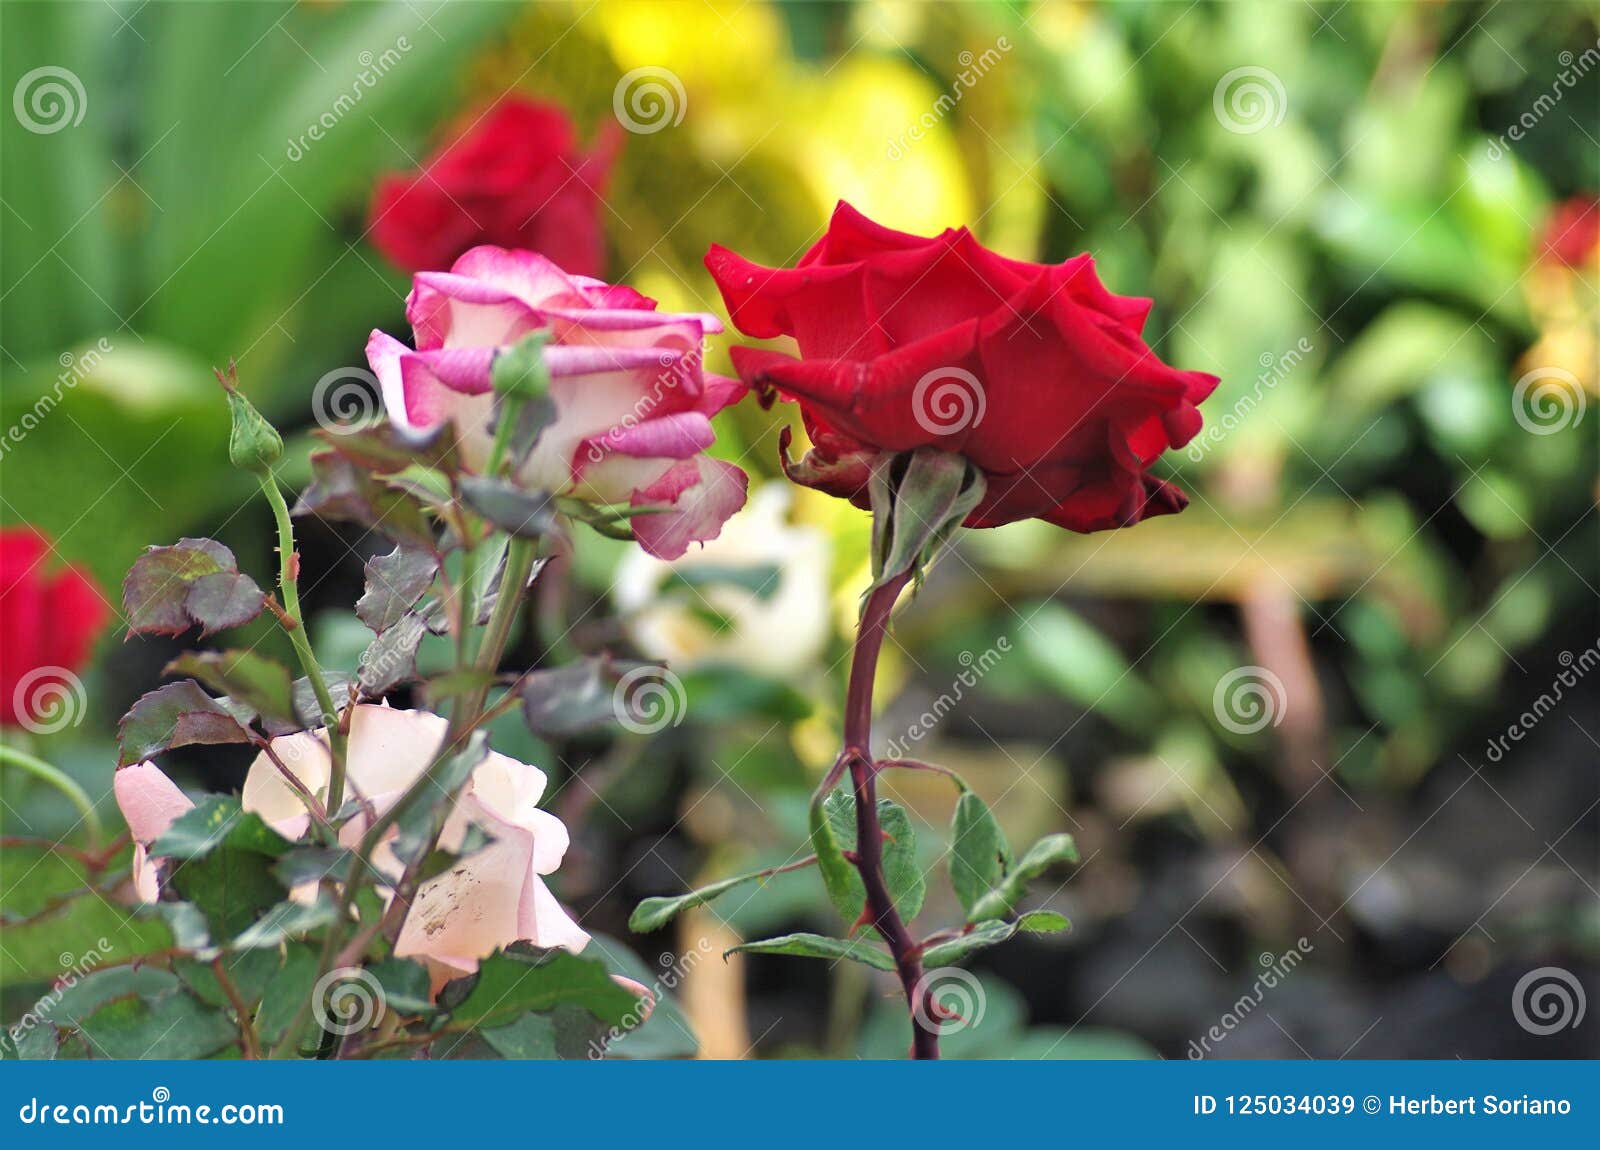 pink exotic rose flower closeup on a honduras national park la ceiba cuero y salado